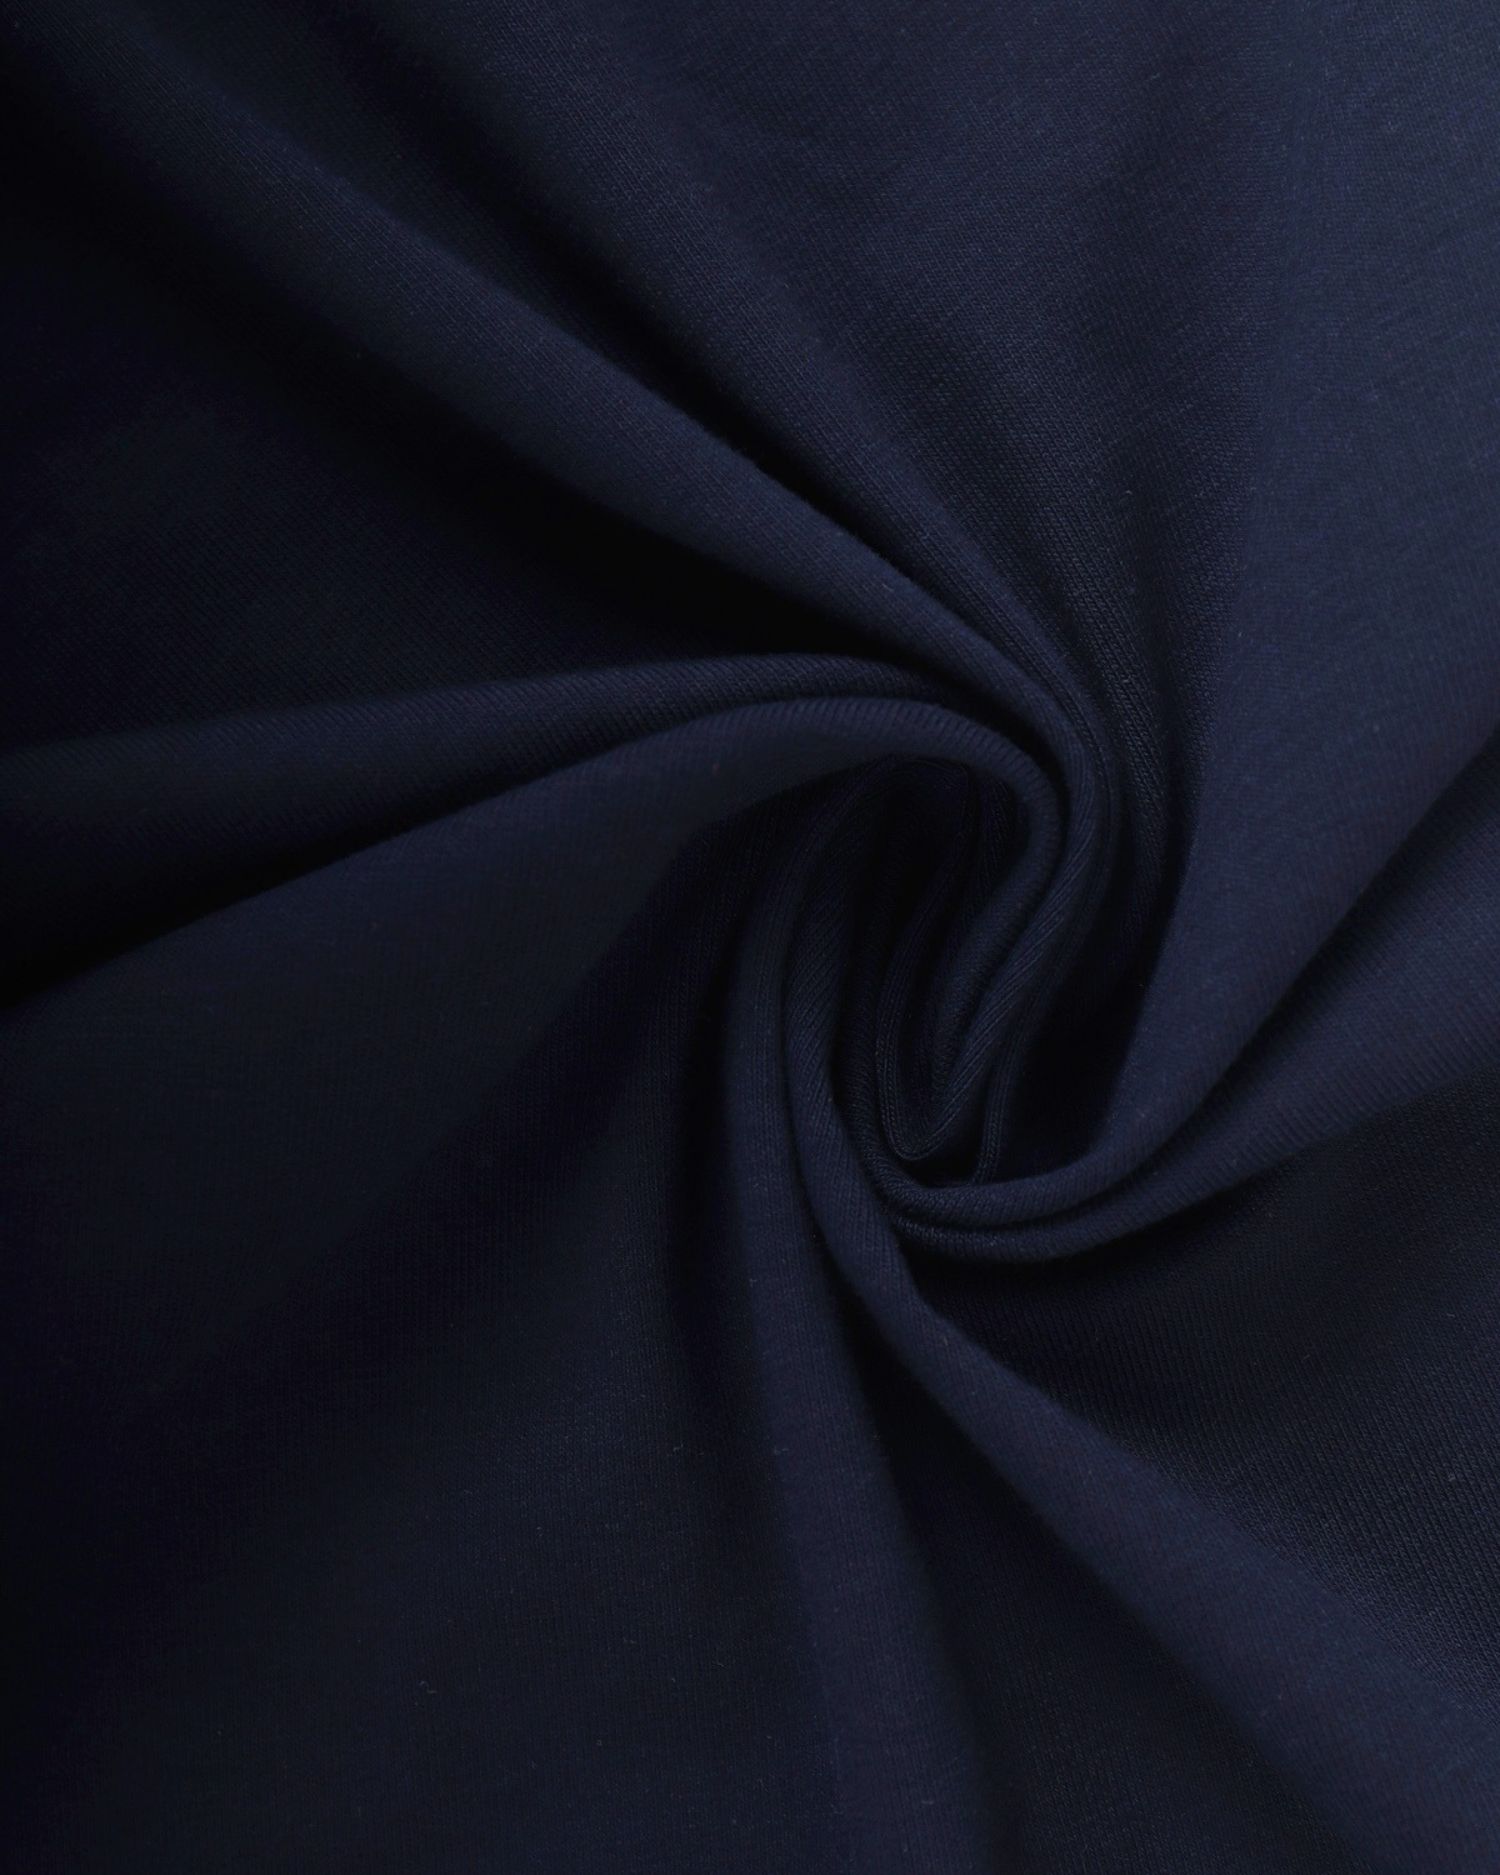 Baumwoll-Jersey mit Elasthan, 1 Meter, 185 g/m2, dunkelblau